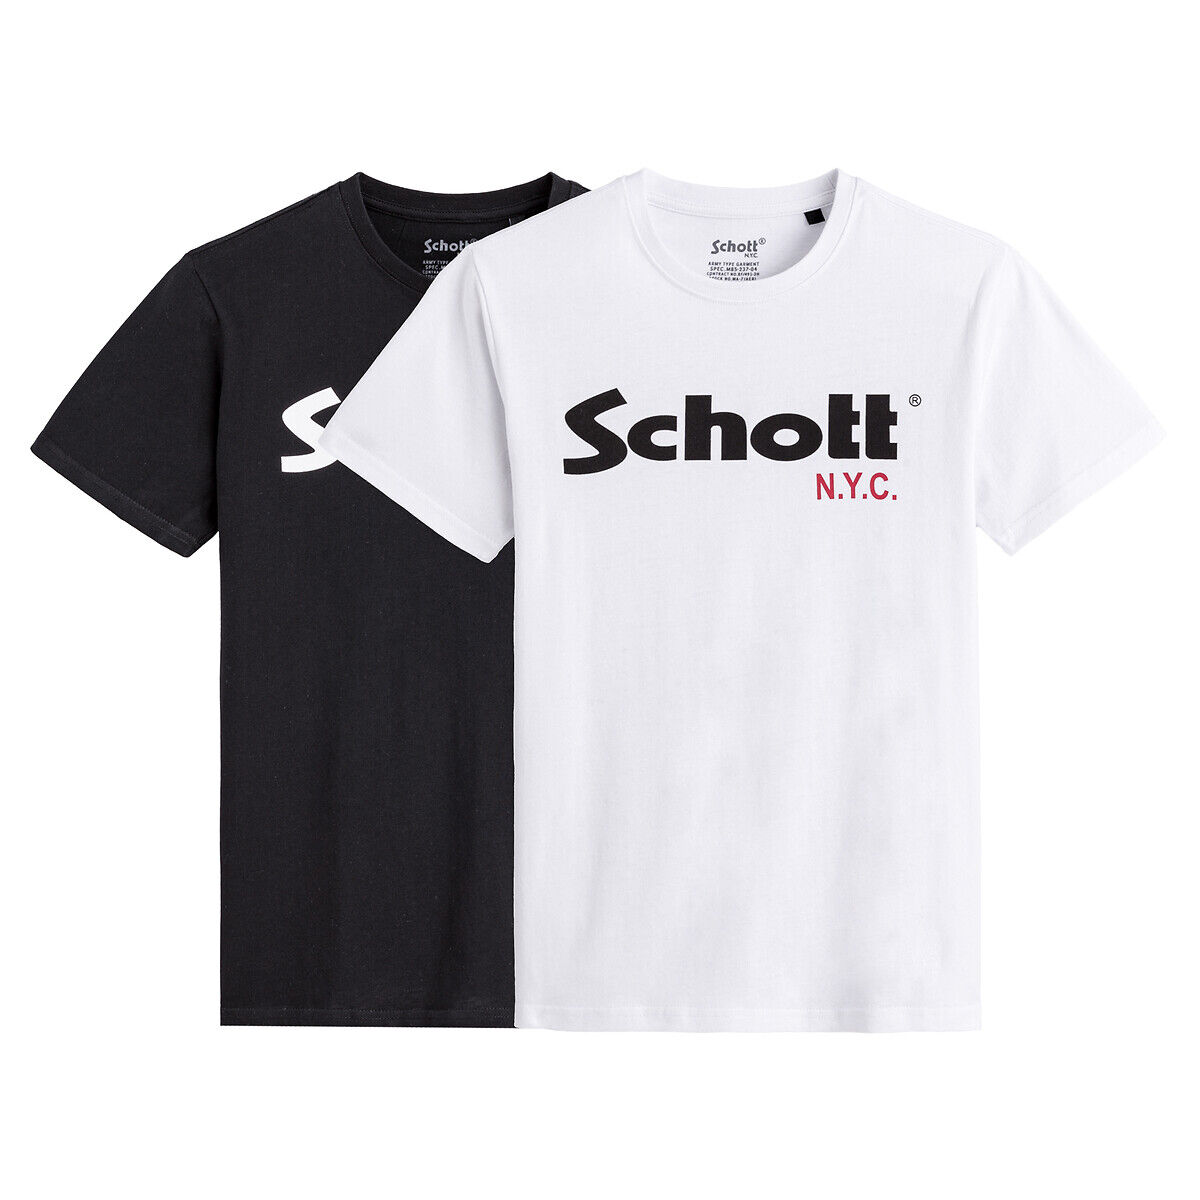 SCHOTT Lot de 2 t-shirt col rond logo Schott